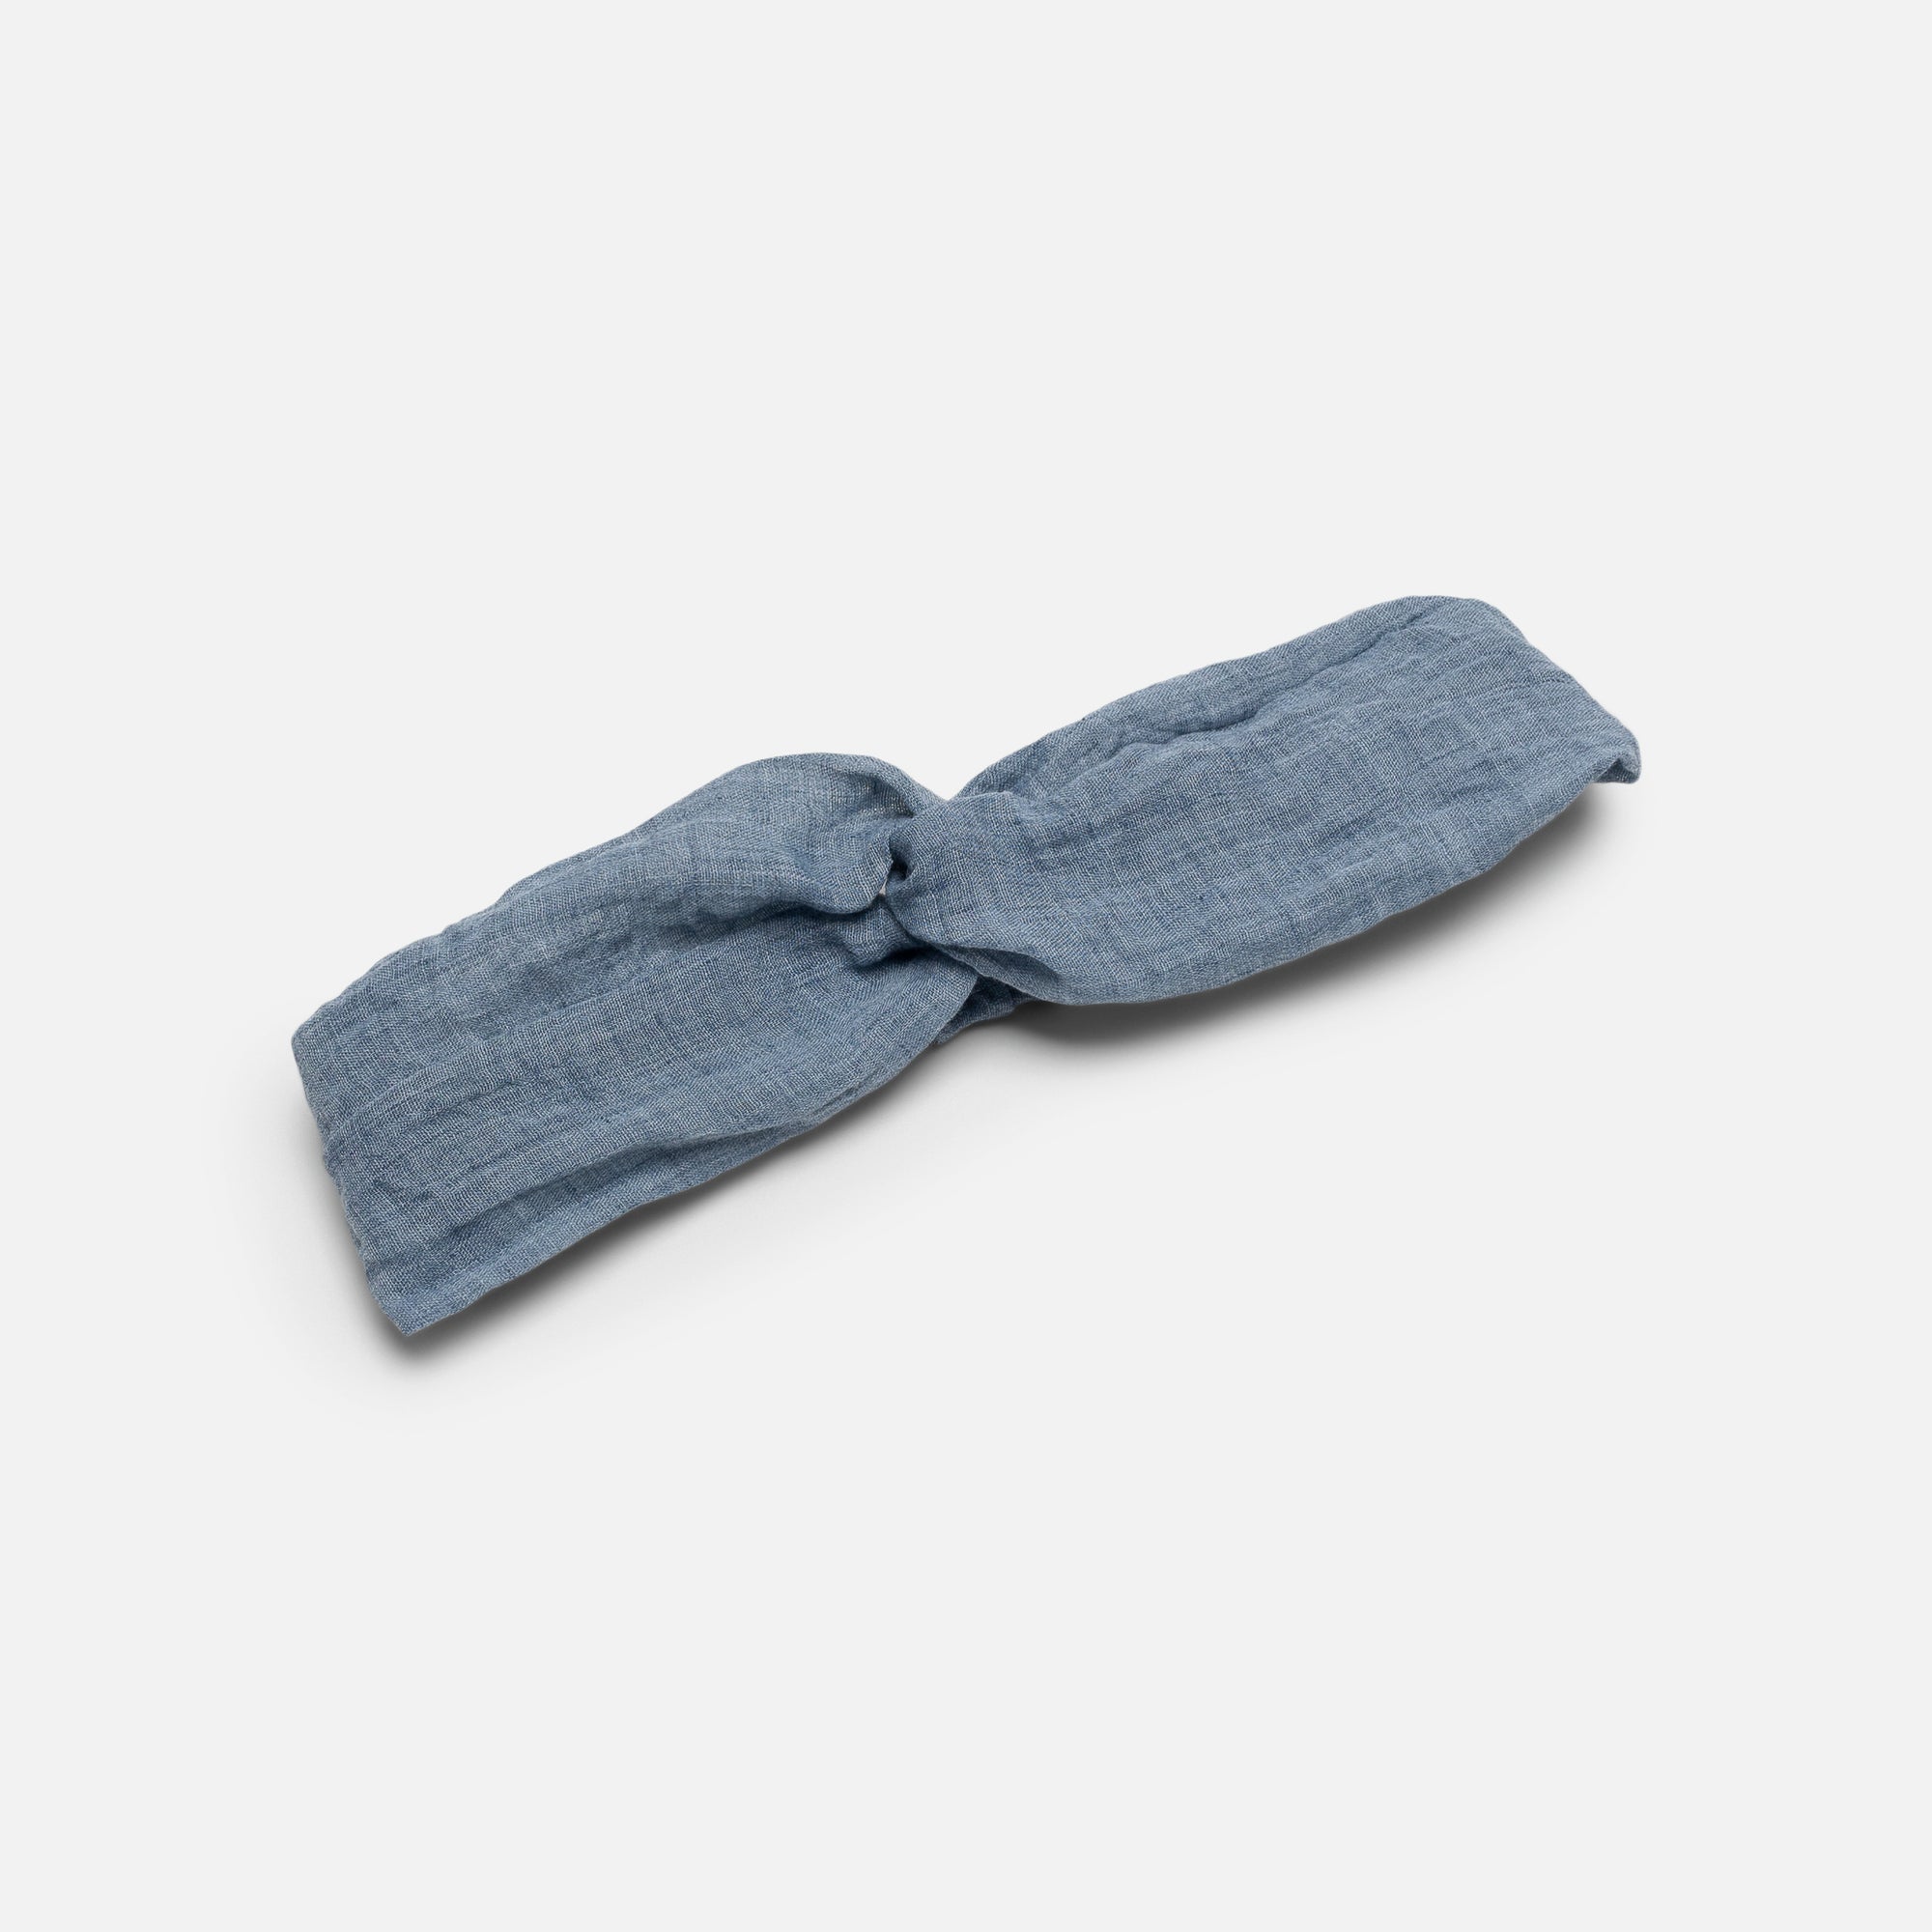 Linen effect blue headband